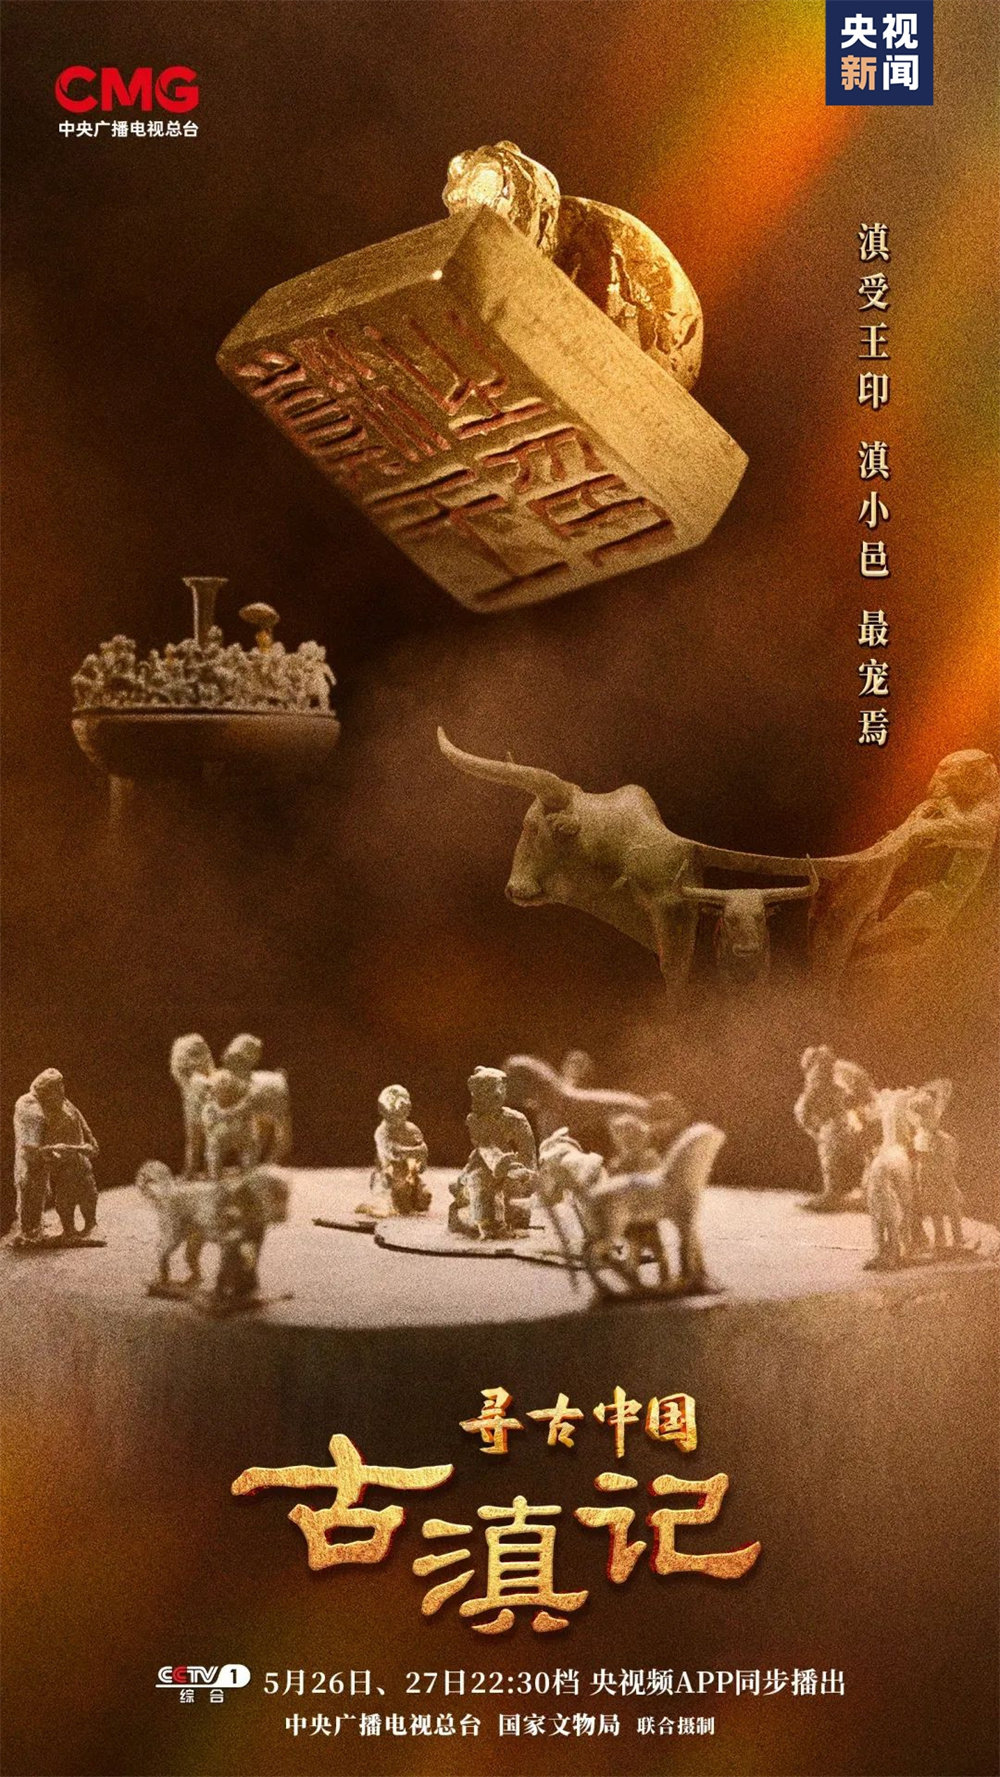 《寻古中国》首部系列《古滇记》海报